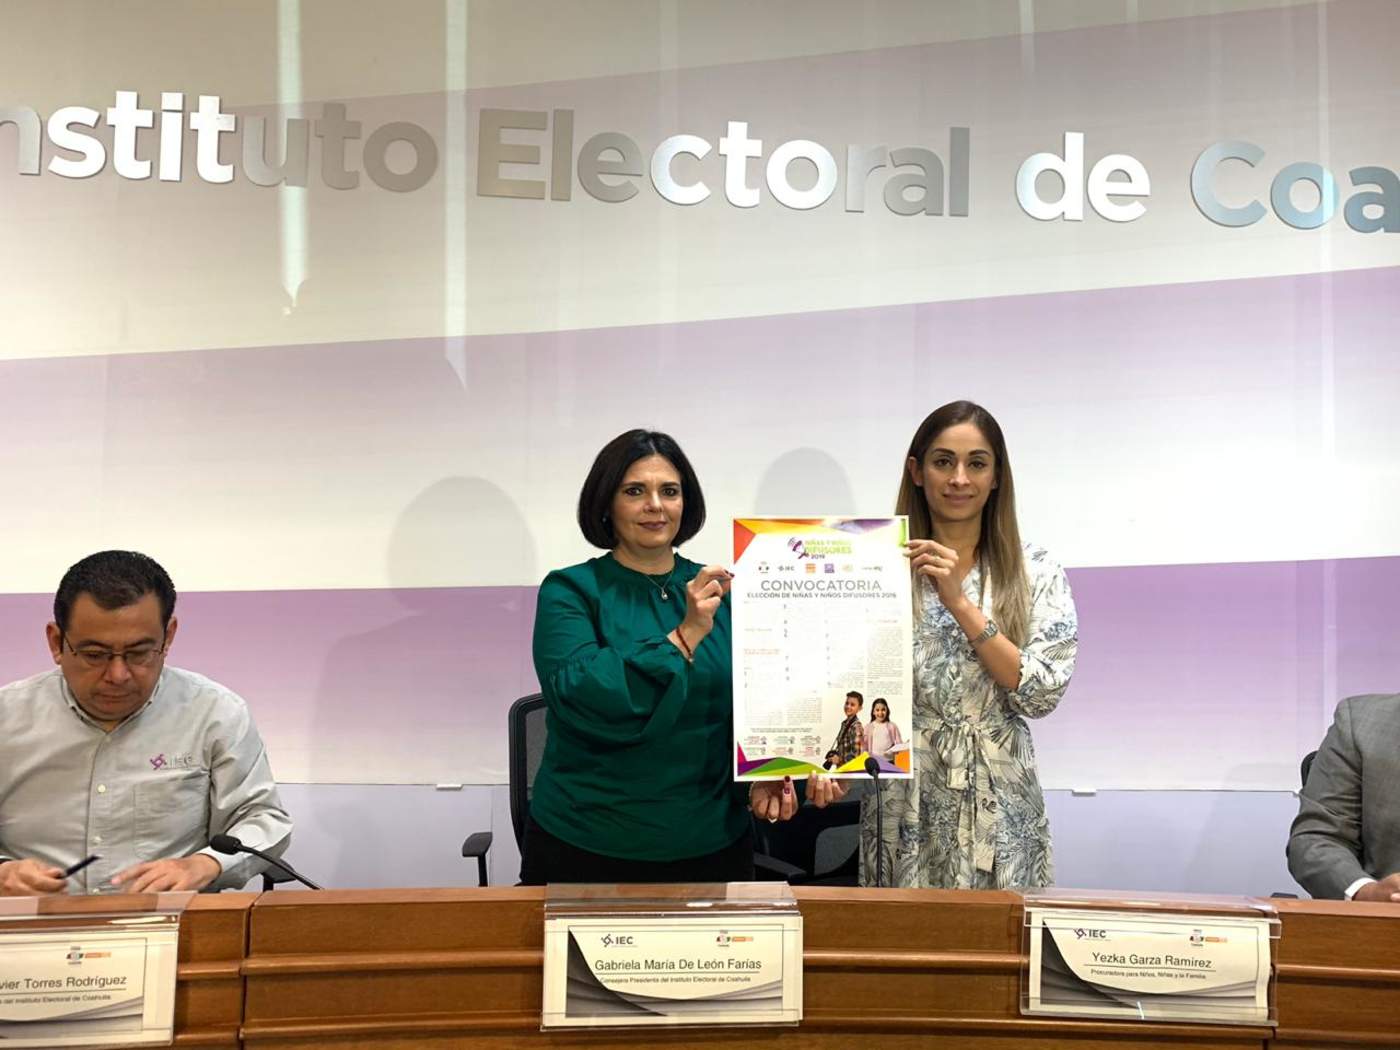 Gabriela María de León Farías, destacó la importancia de capacitar a los niños y niñas en el conocimiento de sus derechos y en materia de democracia, ya que ellos eligen a sus representantes a través del voto.